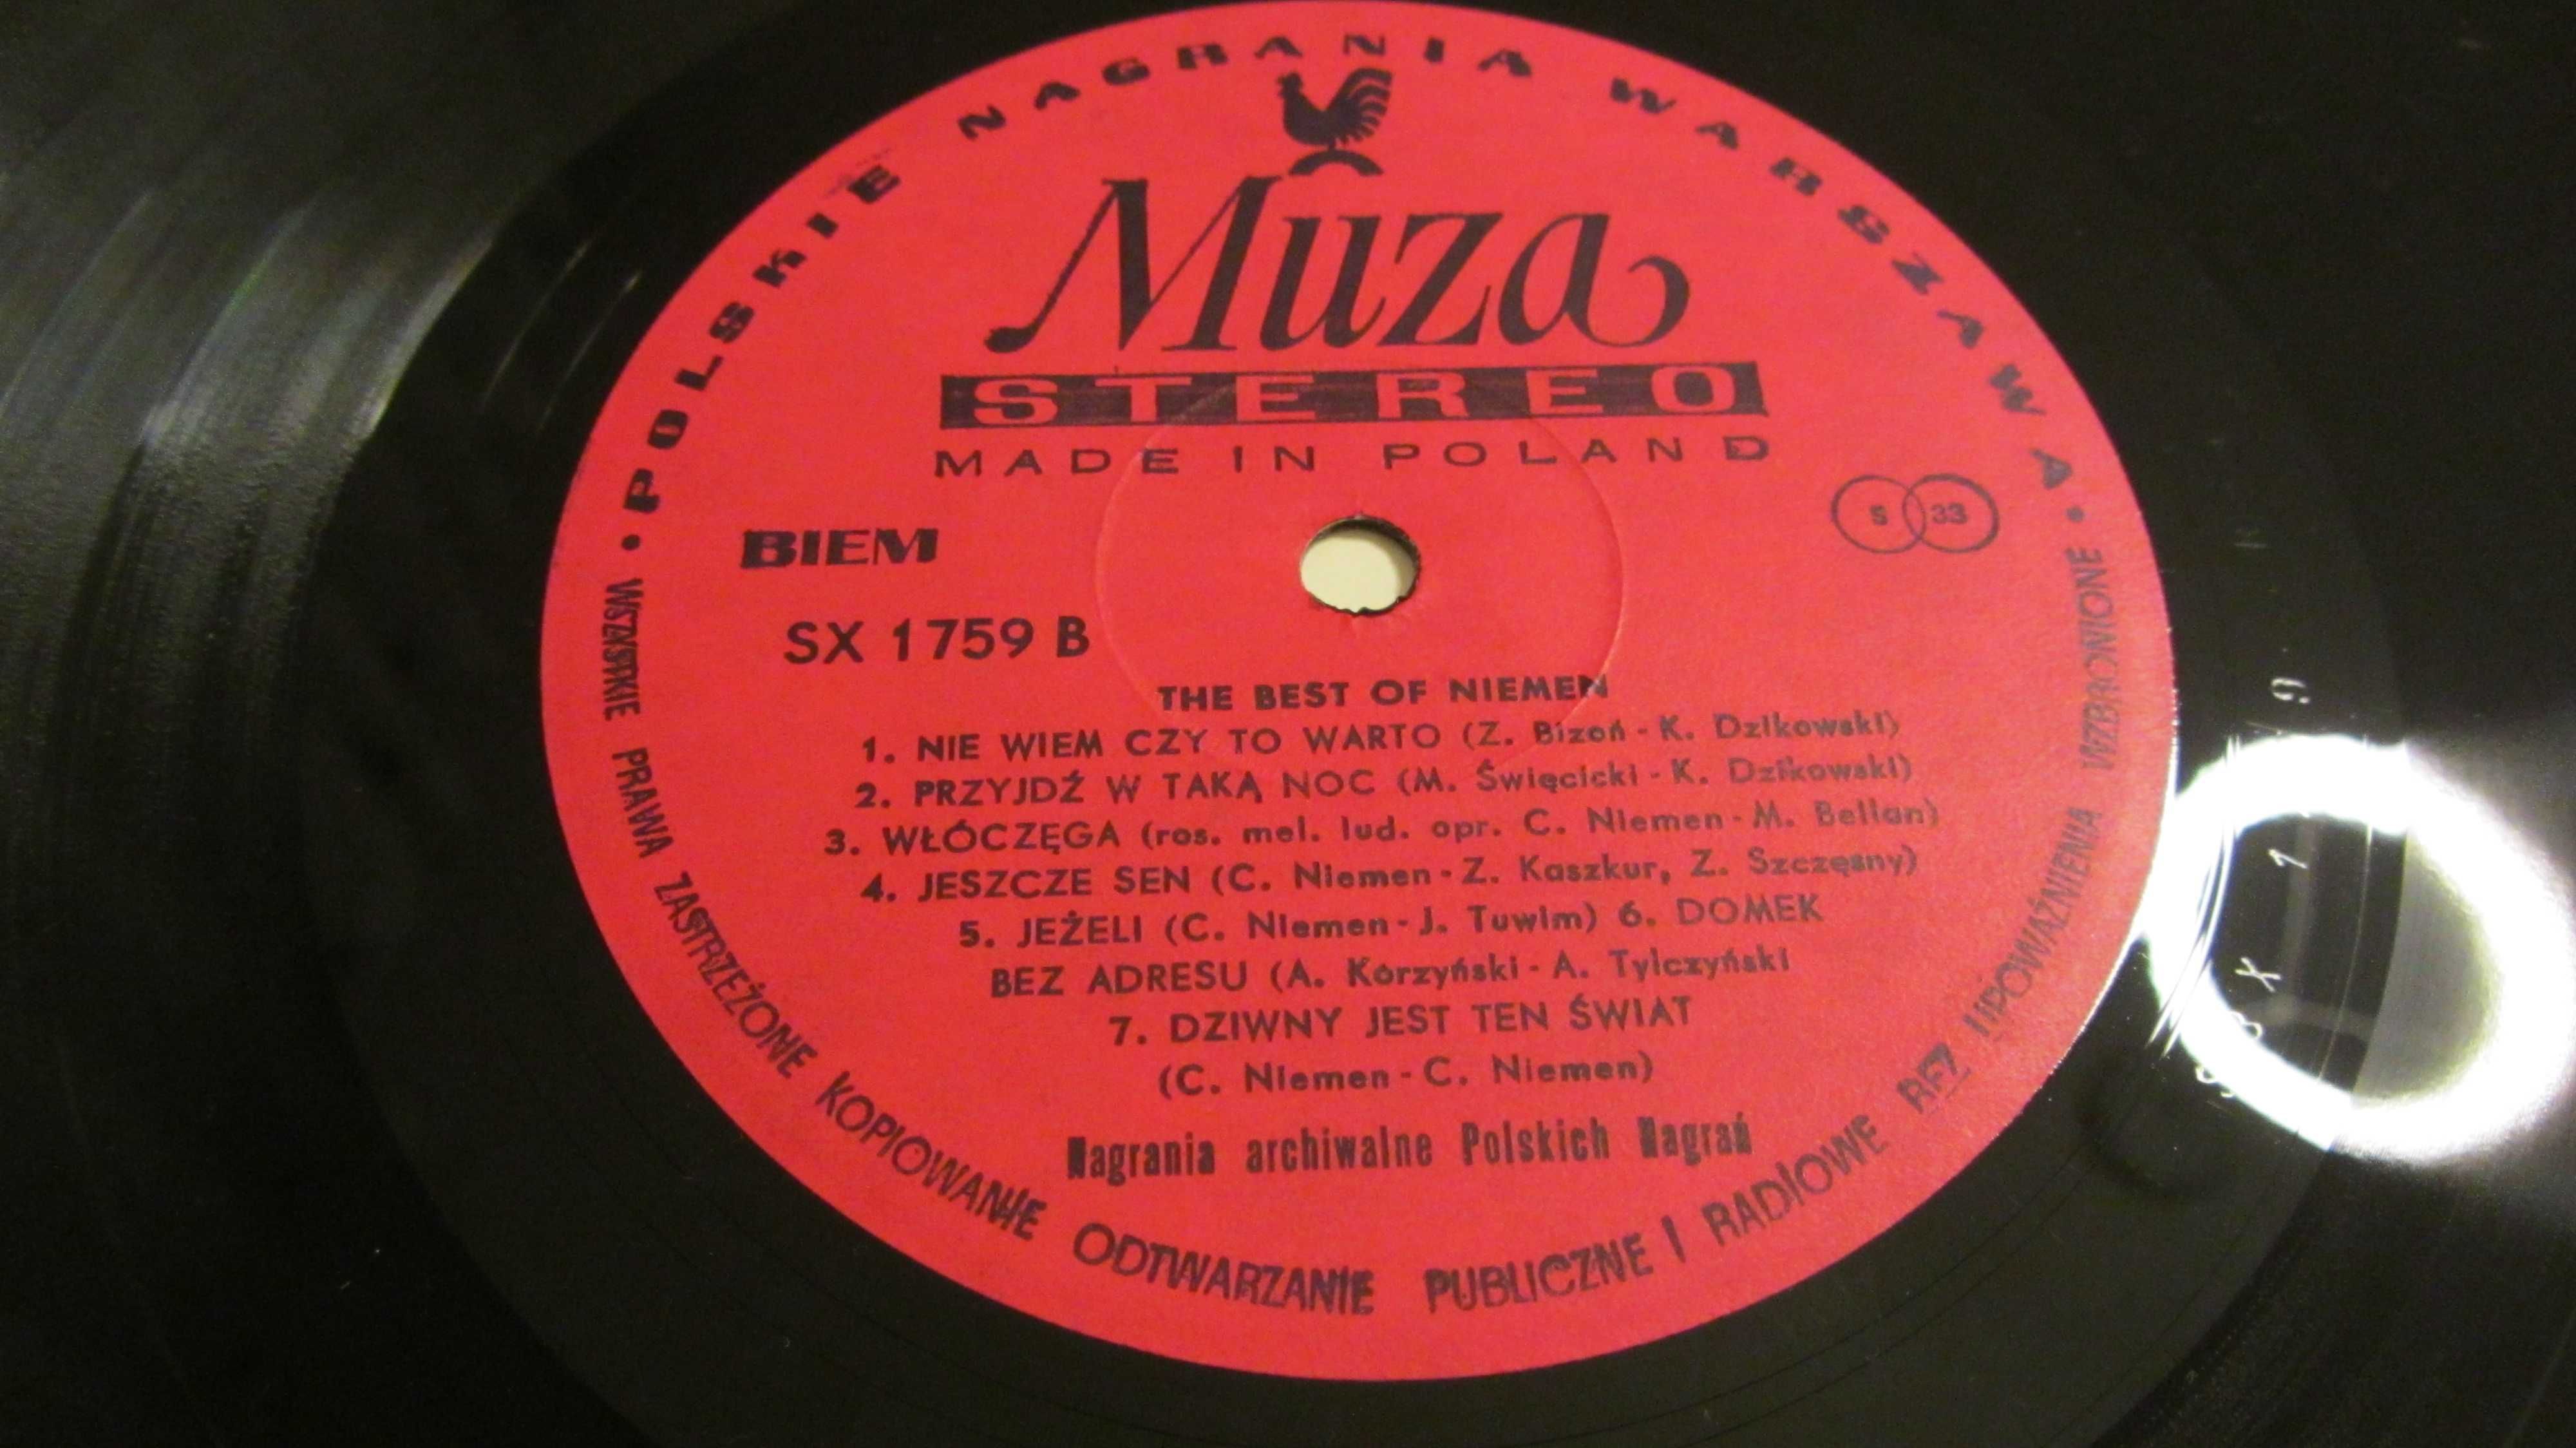 Czesław Niemen "The Best of Niemen" Winyl Vinyl (NM)